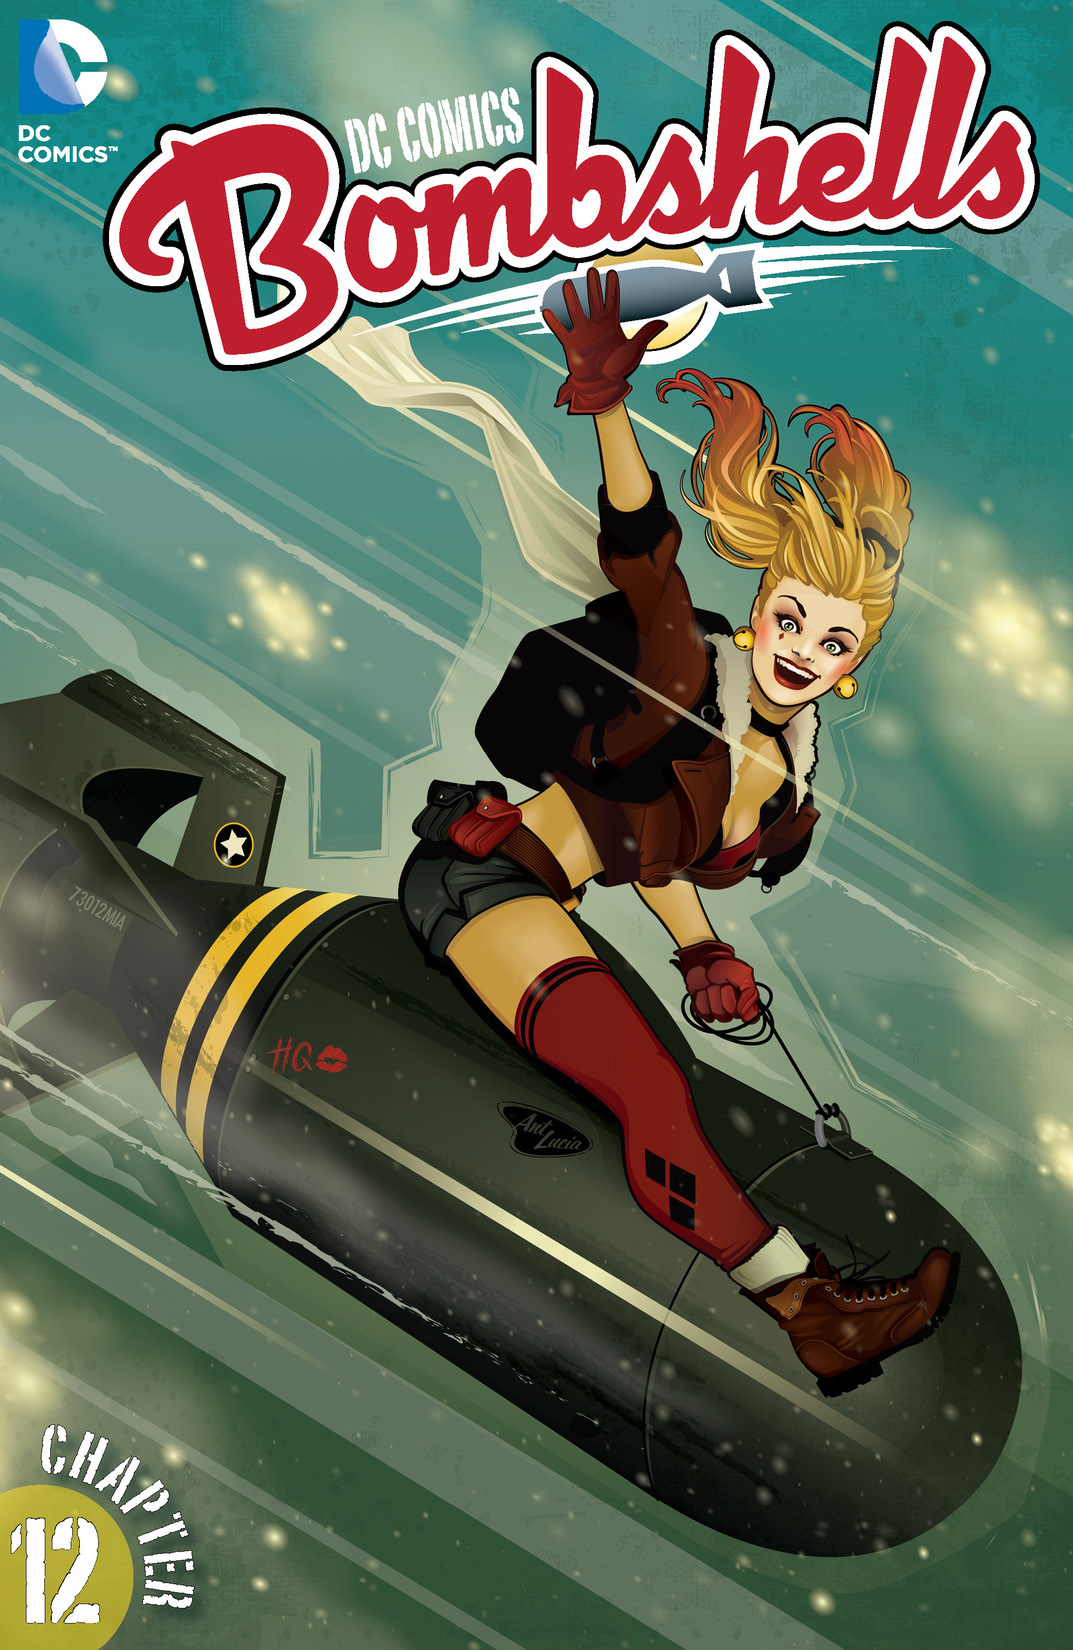 DC Comics: Bombshells #12 preview images